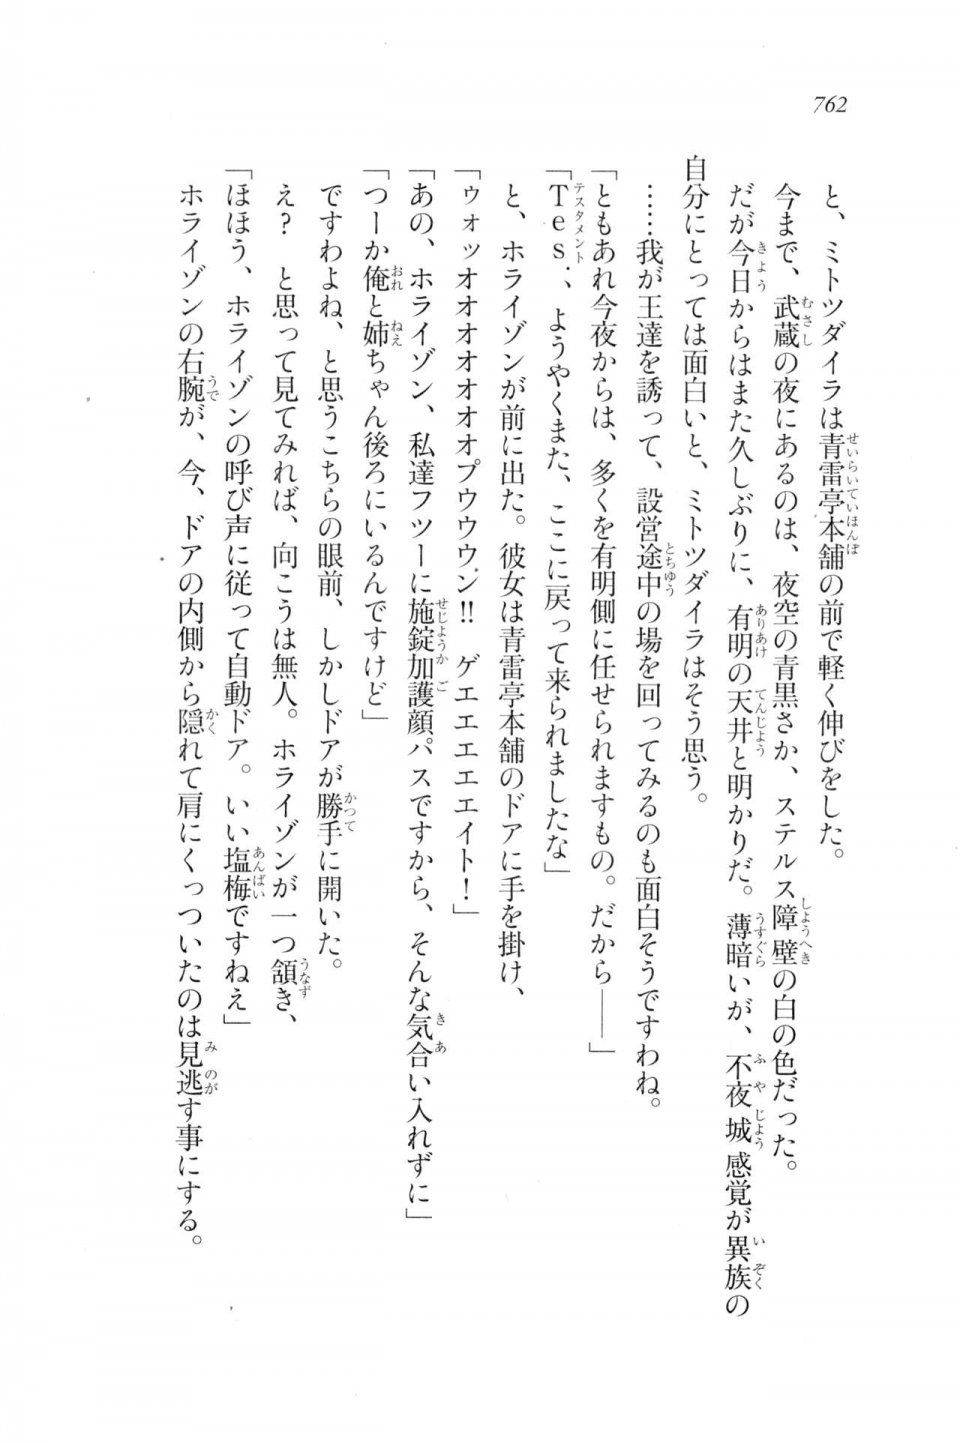 Kyoukai Senjou no Horizon LN Vol 20(8B) - Photo #762